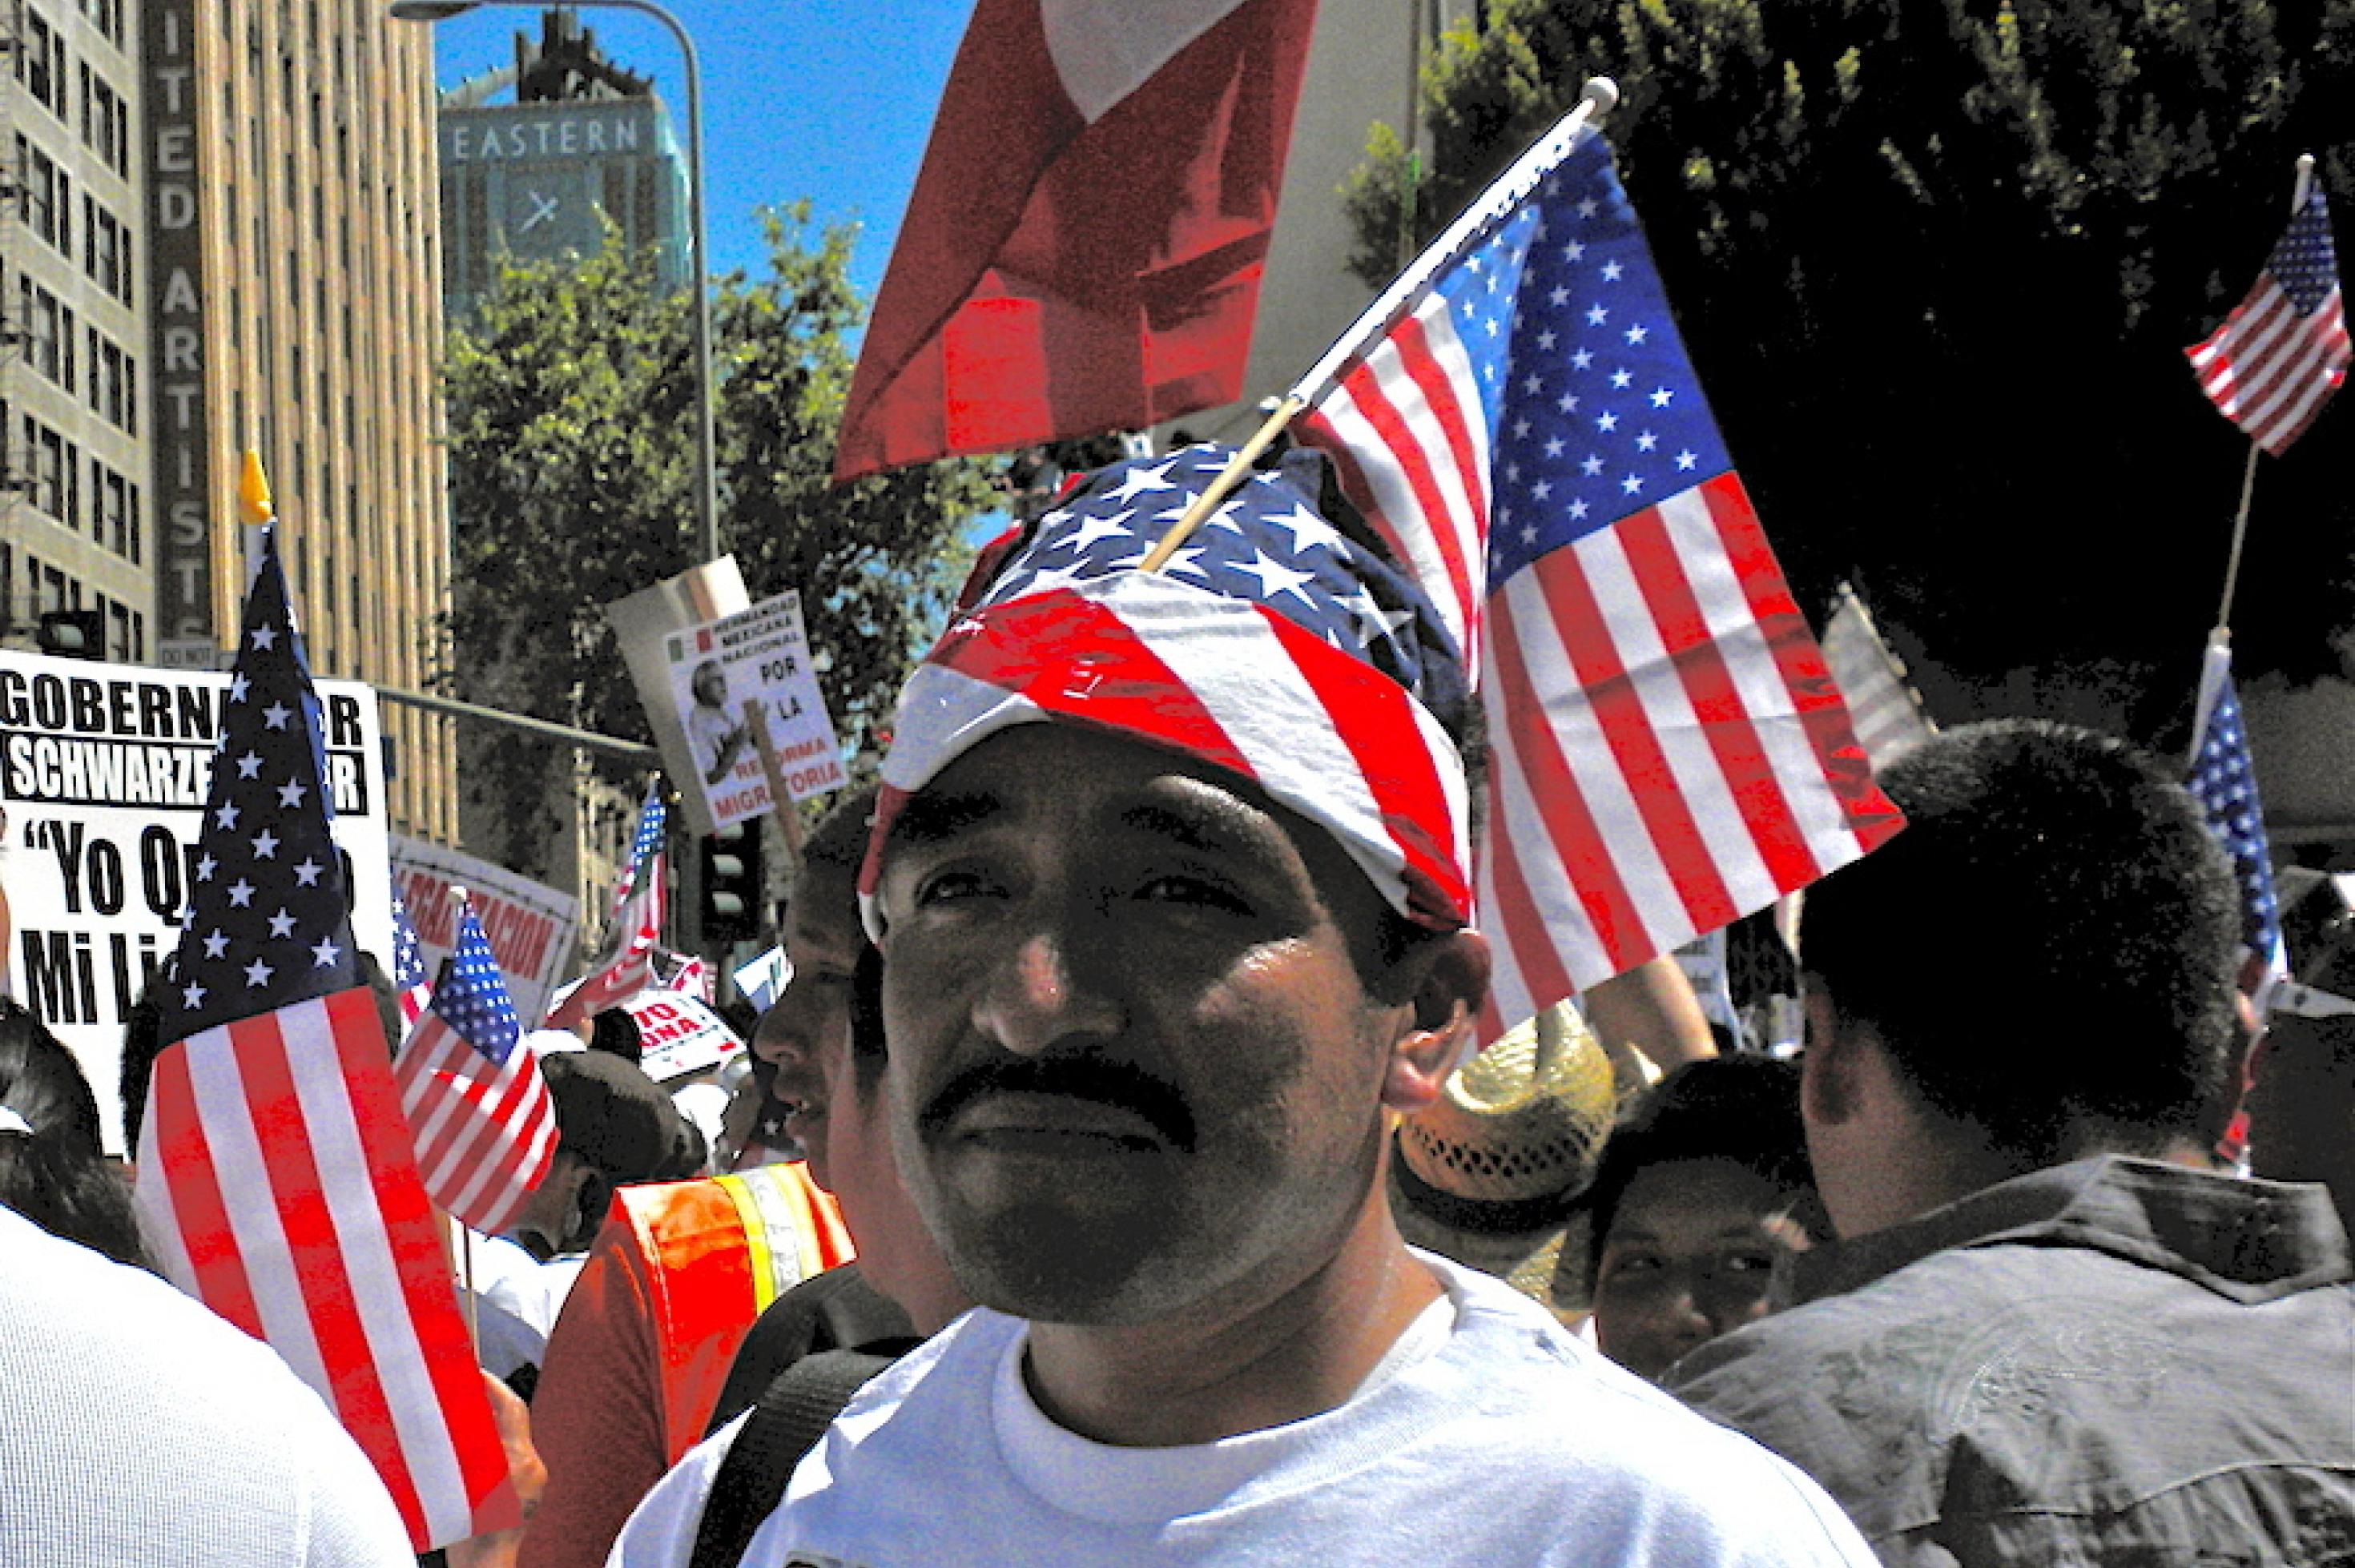 Lateinamerikaner bei Demonstration in Kalifornien.